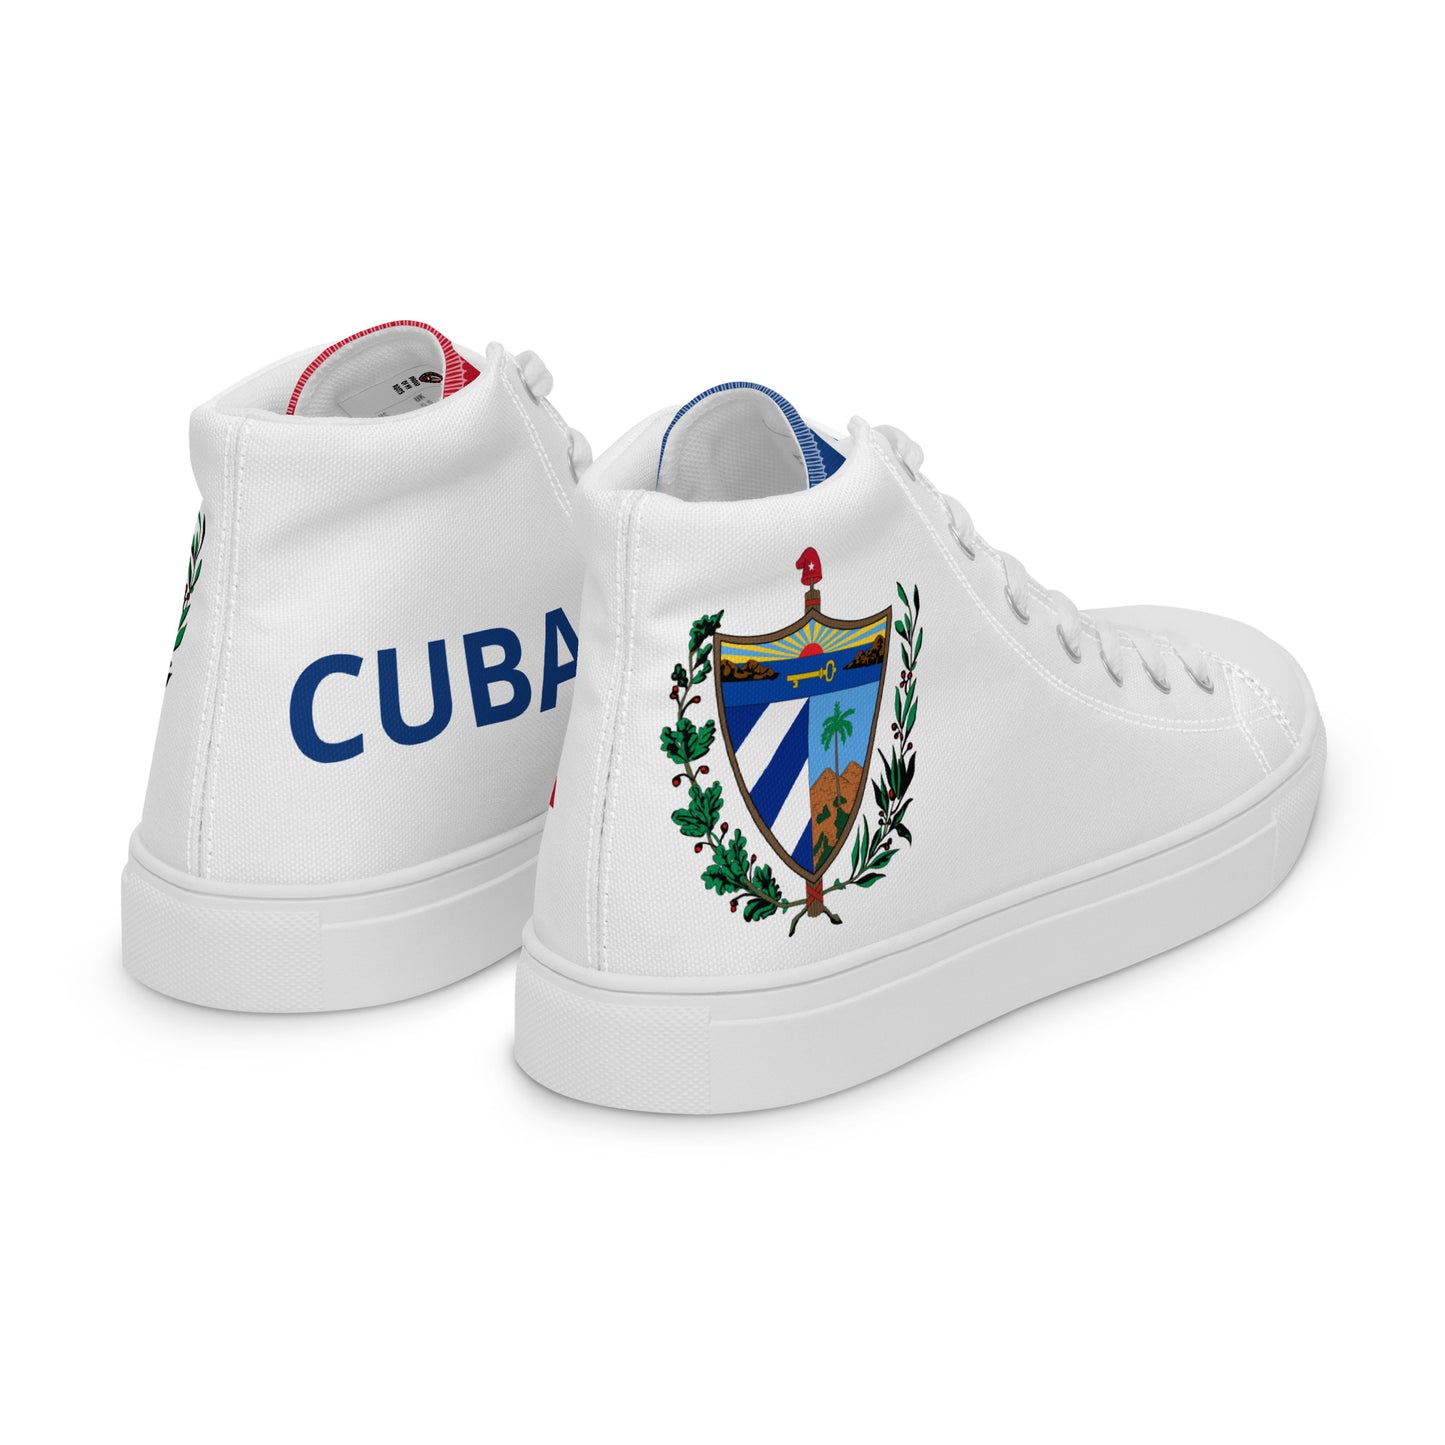 Cuba - Women - White - High top shoes